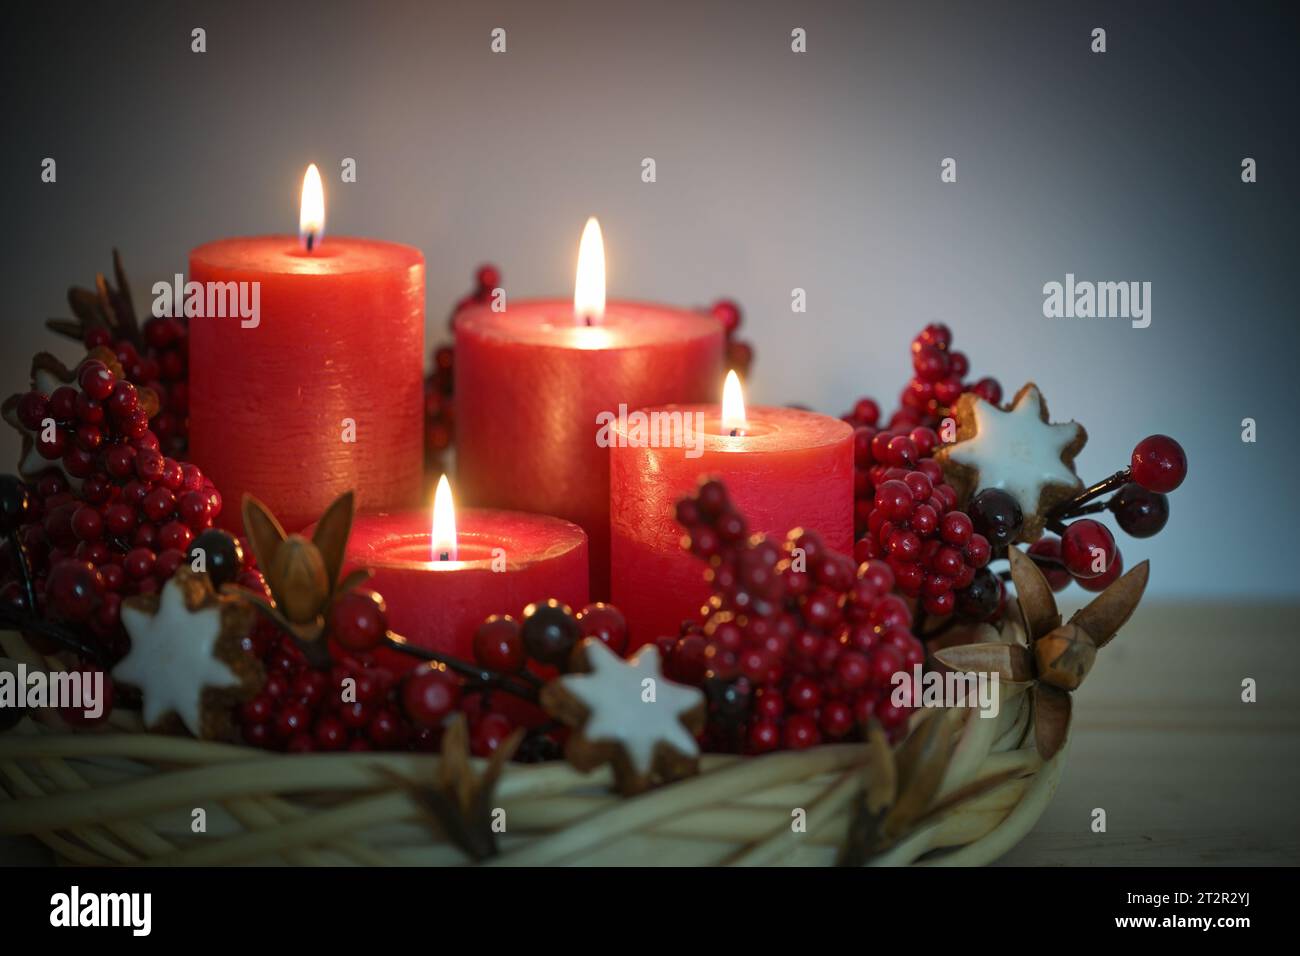 Corona dell'avvento di vimini di salice con quattro candele rosse accese, biscotti e frutti di bosco con stella di cannella, decorazioni natalizie per Natale, spazio fotocopie, Foto Stock